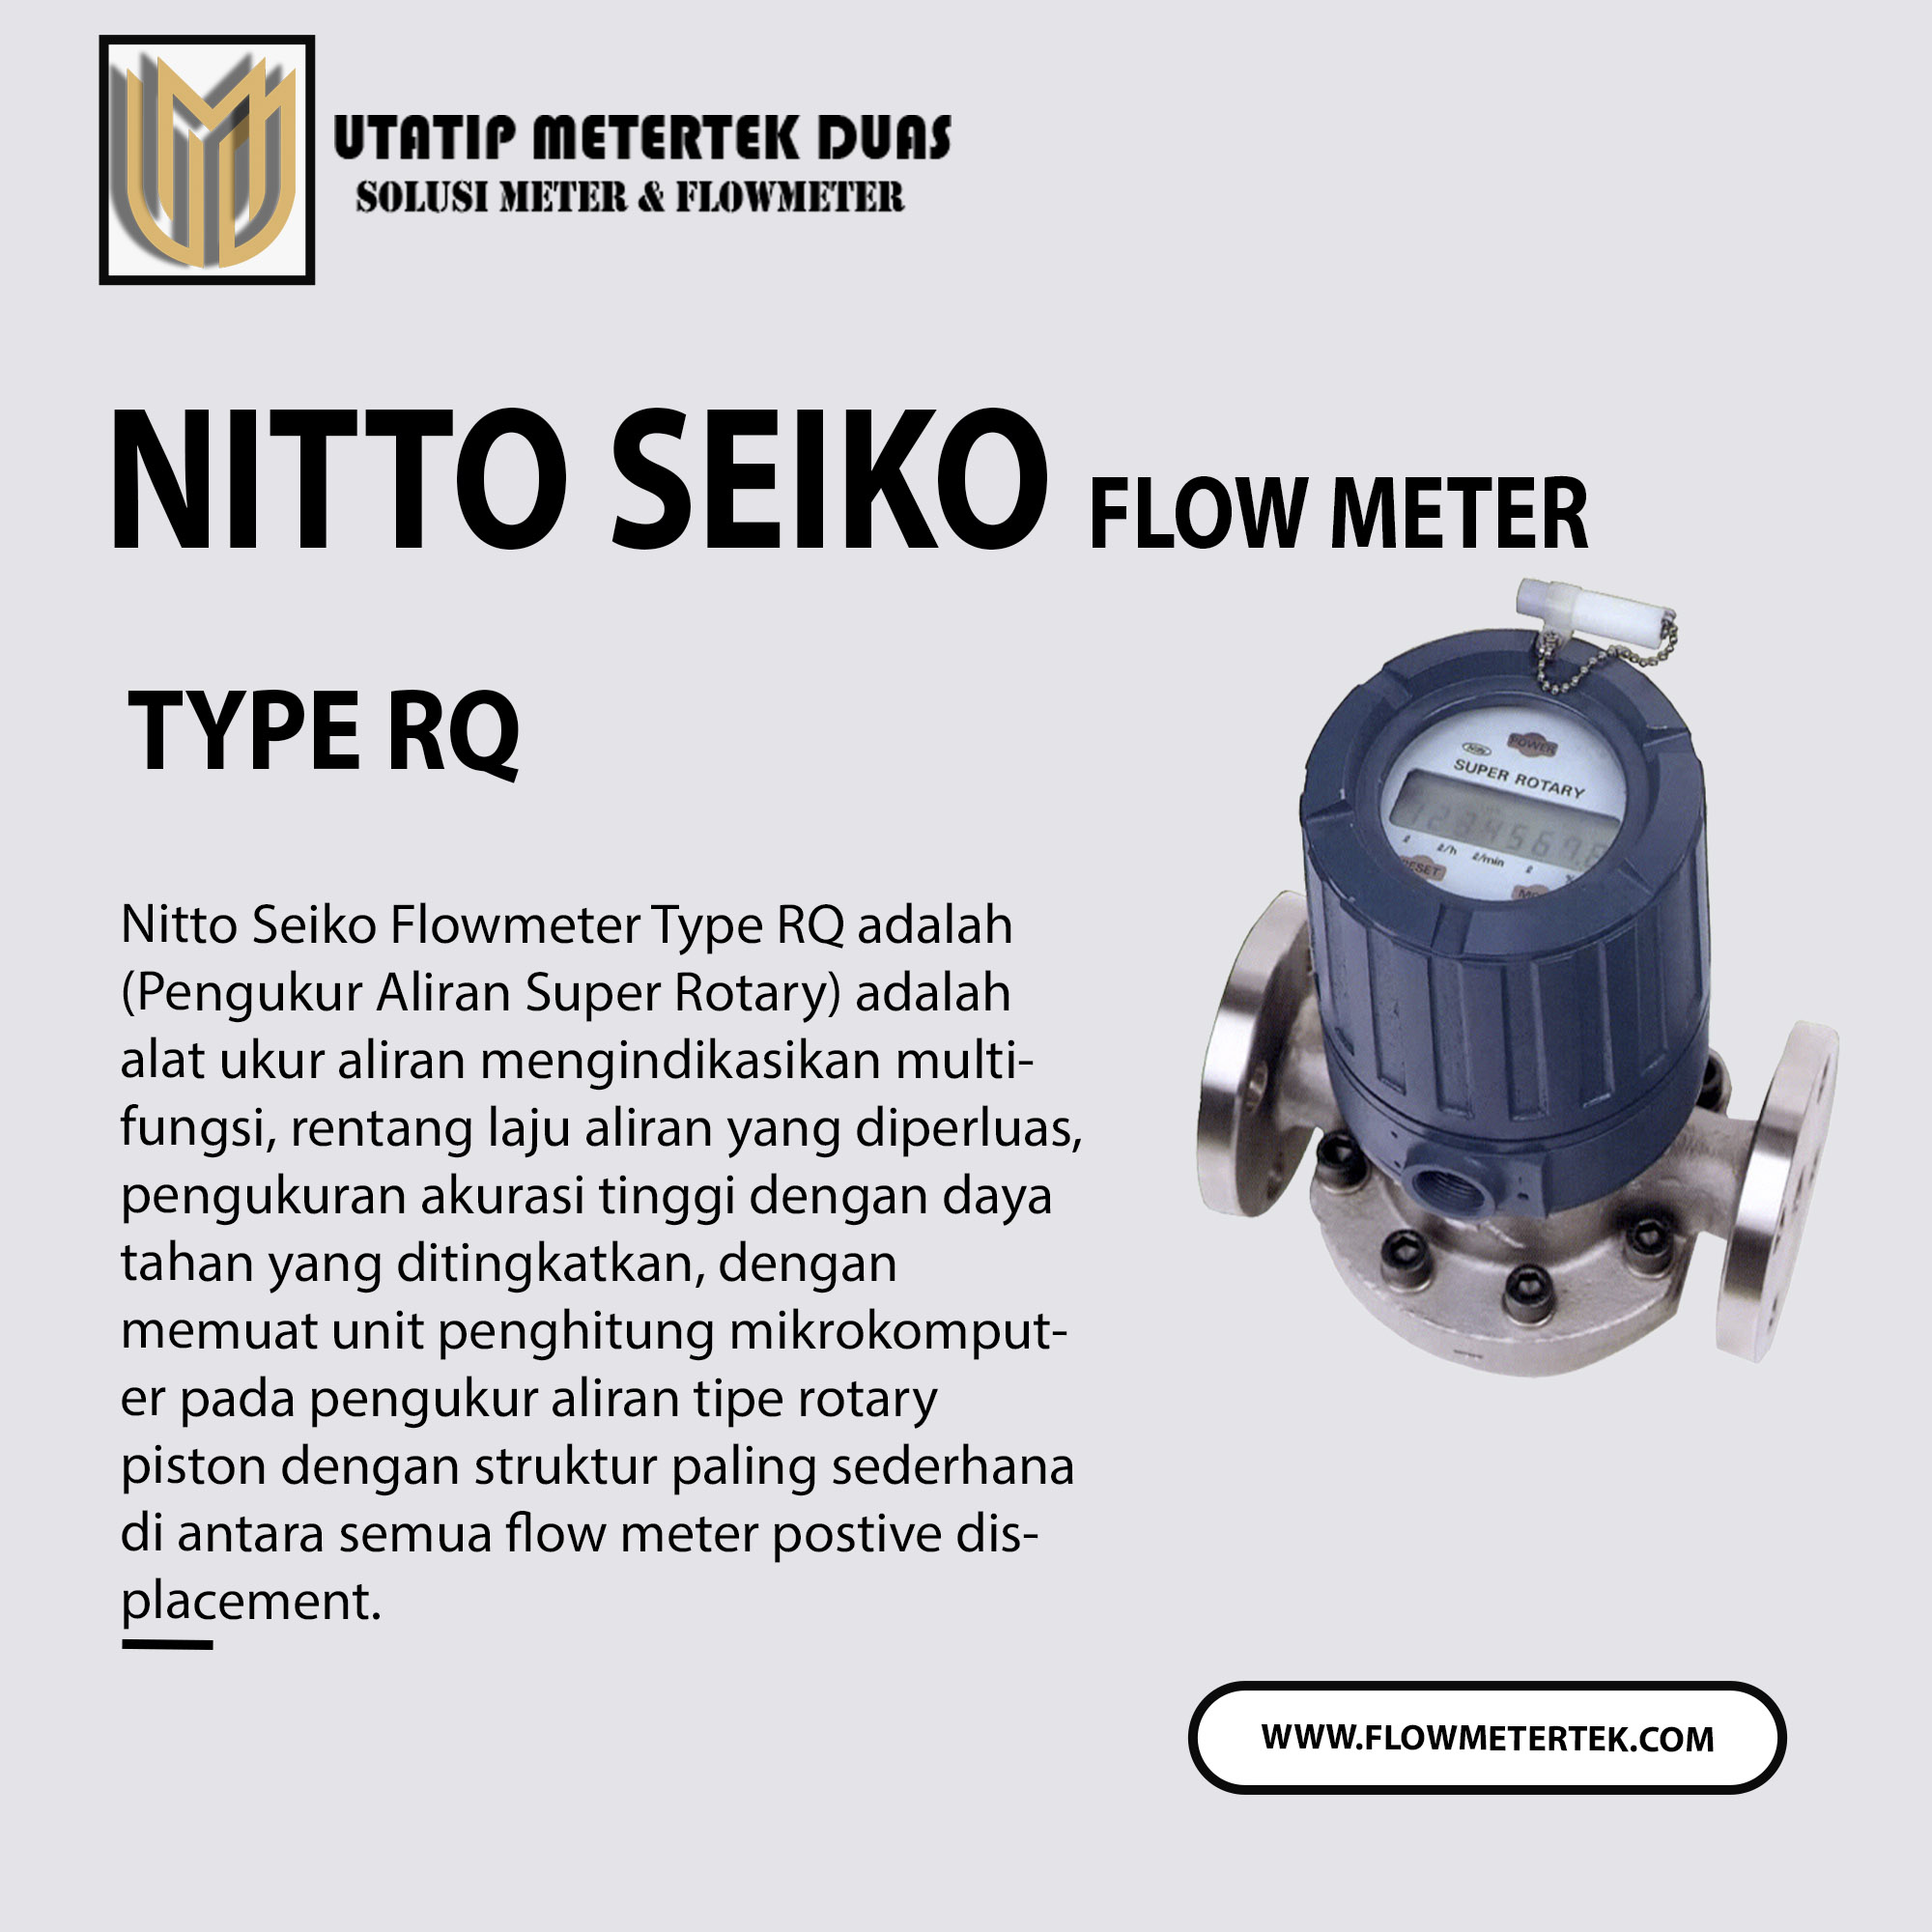 Nitto Seiko Flow Meter Type RQ